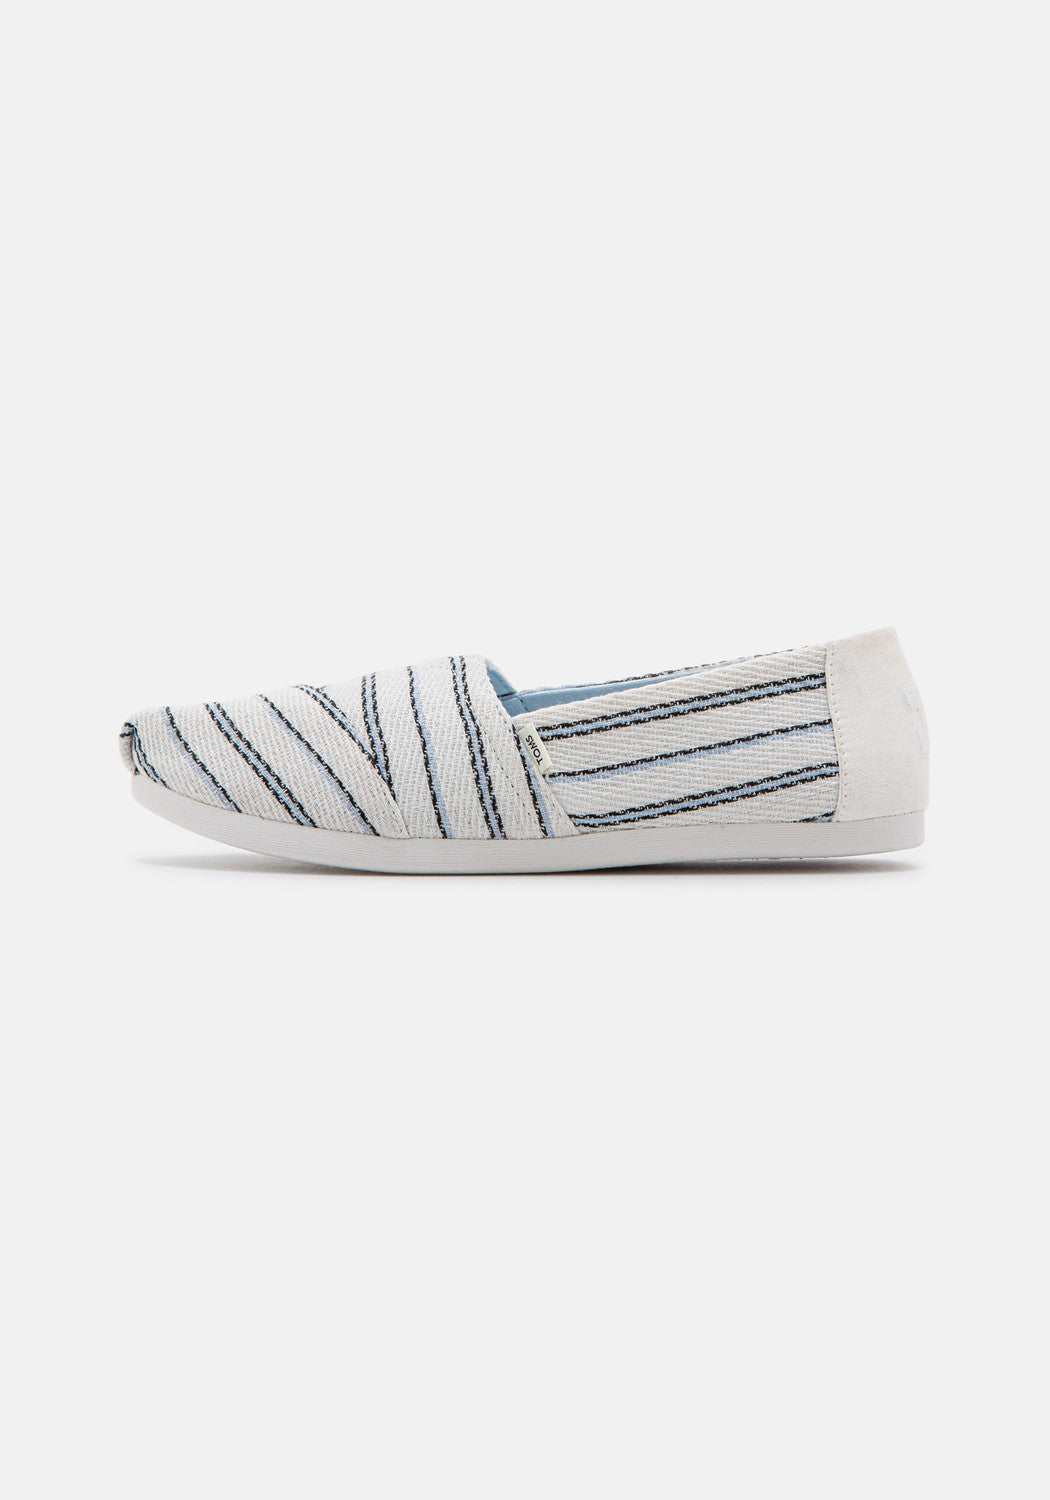 Textured Stripe WM white | Bildmaterial bereitgestellt von SHOES.PLEASE.